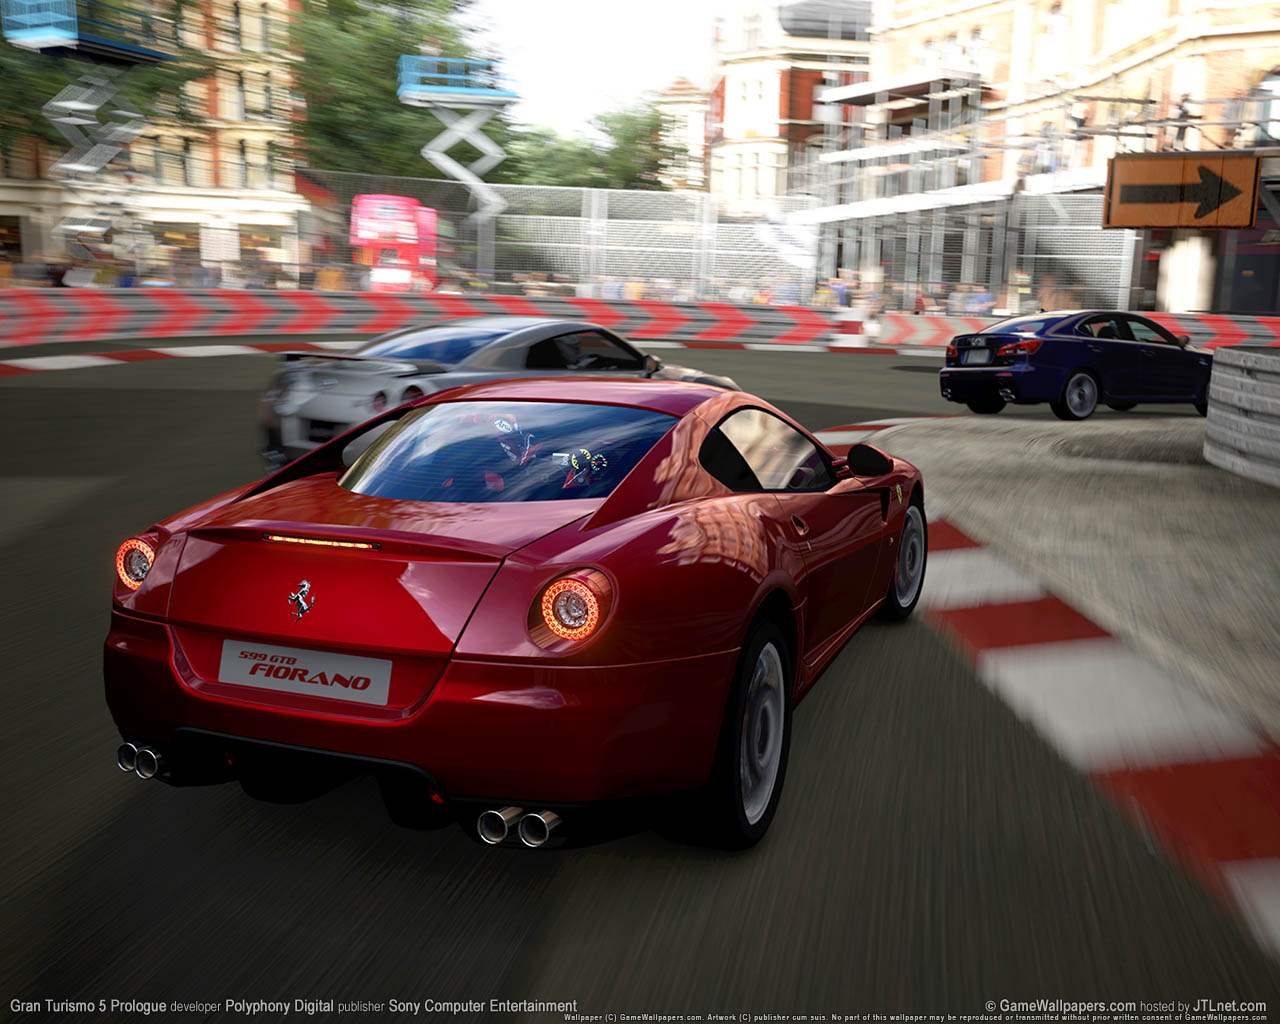 Gran Turismo 5 Prologue fond d'cran 02 1280x1024